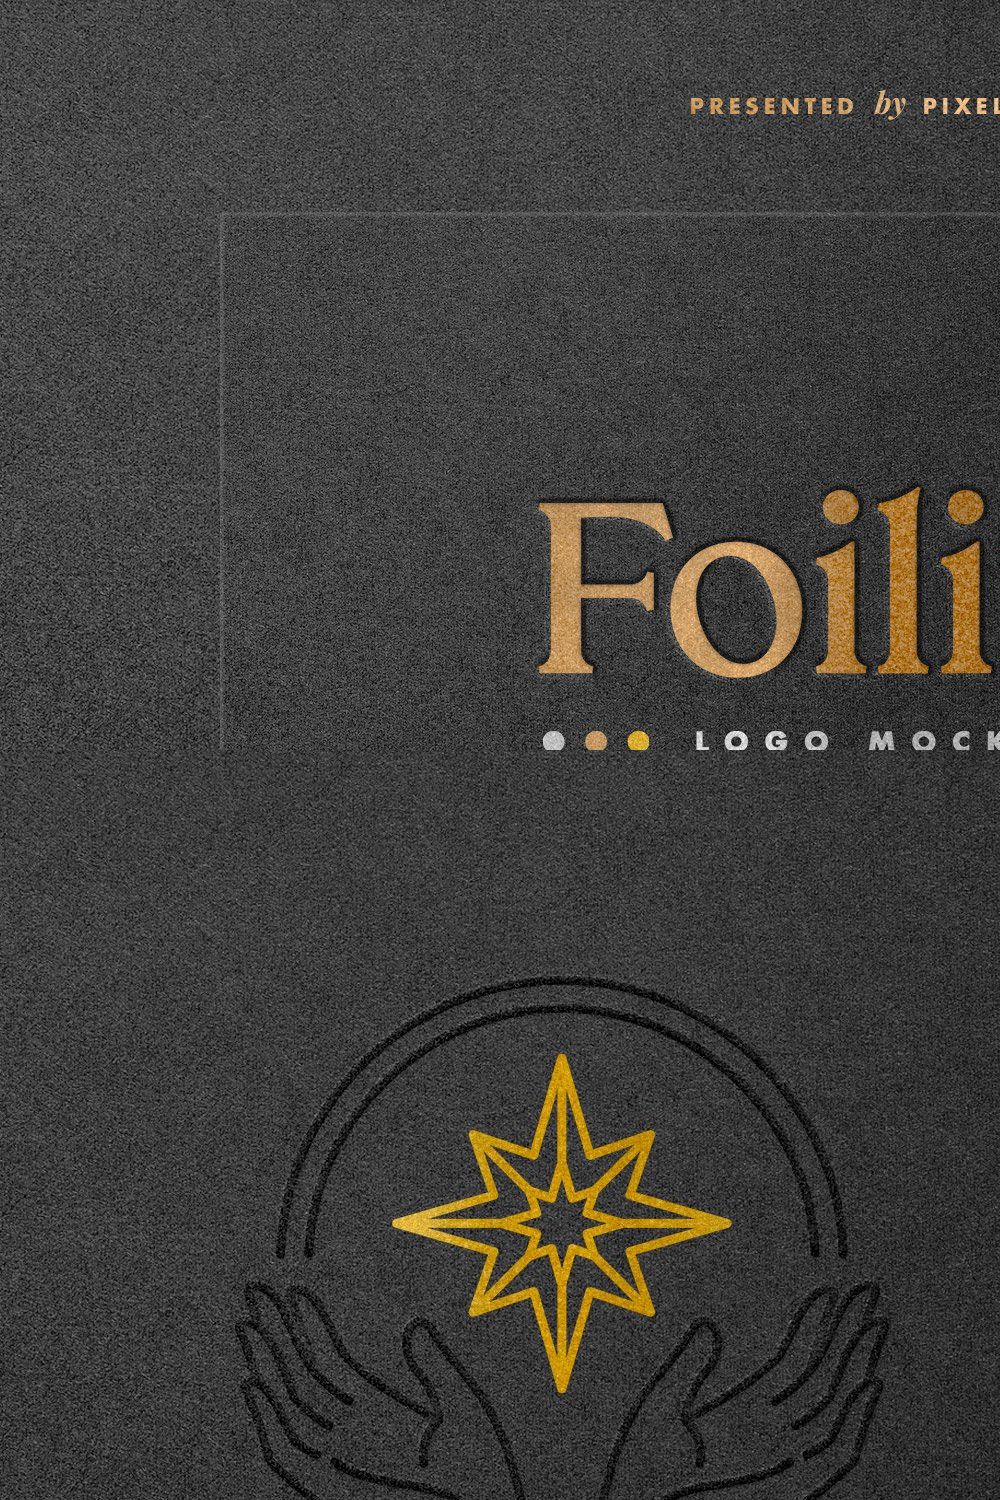 Hot Foil Logo Mockups pinterest preview image.